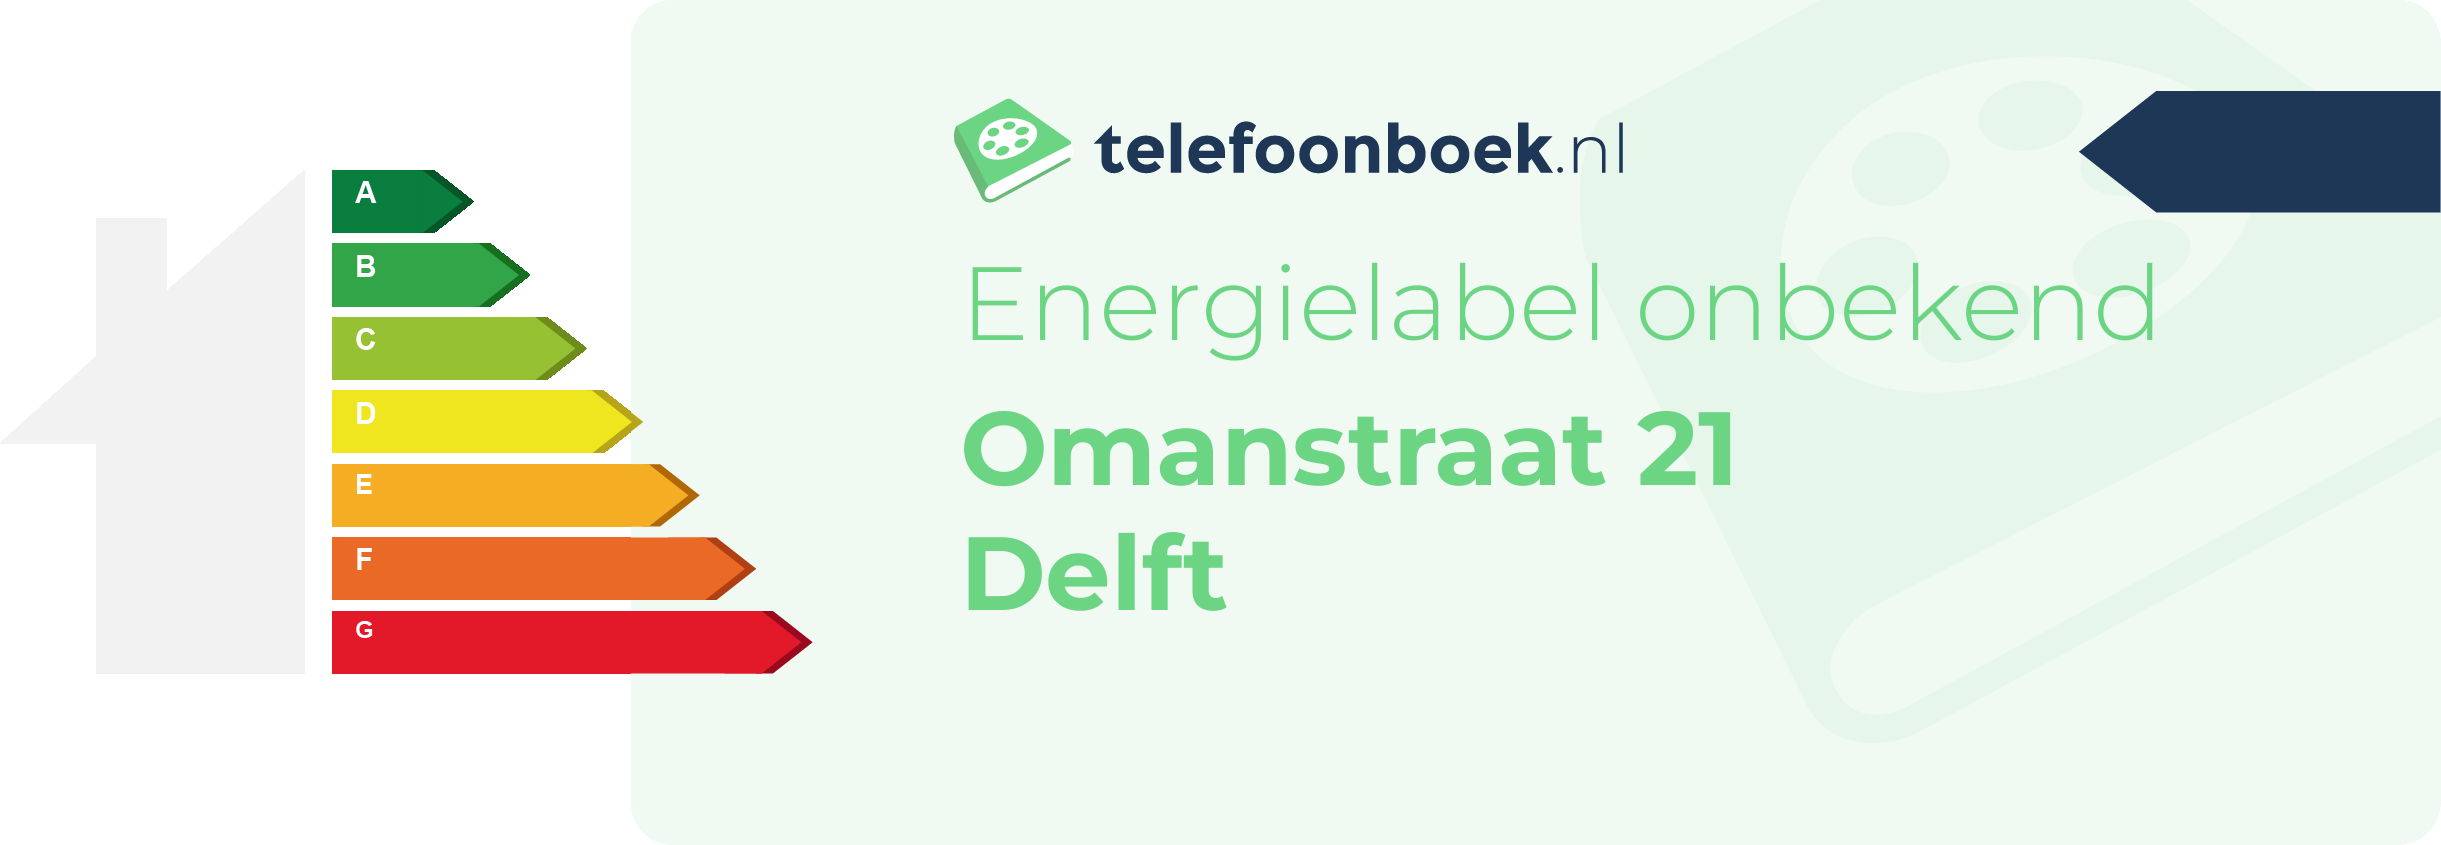 Energielabel Omanstraat 21 Delft